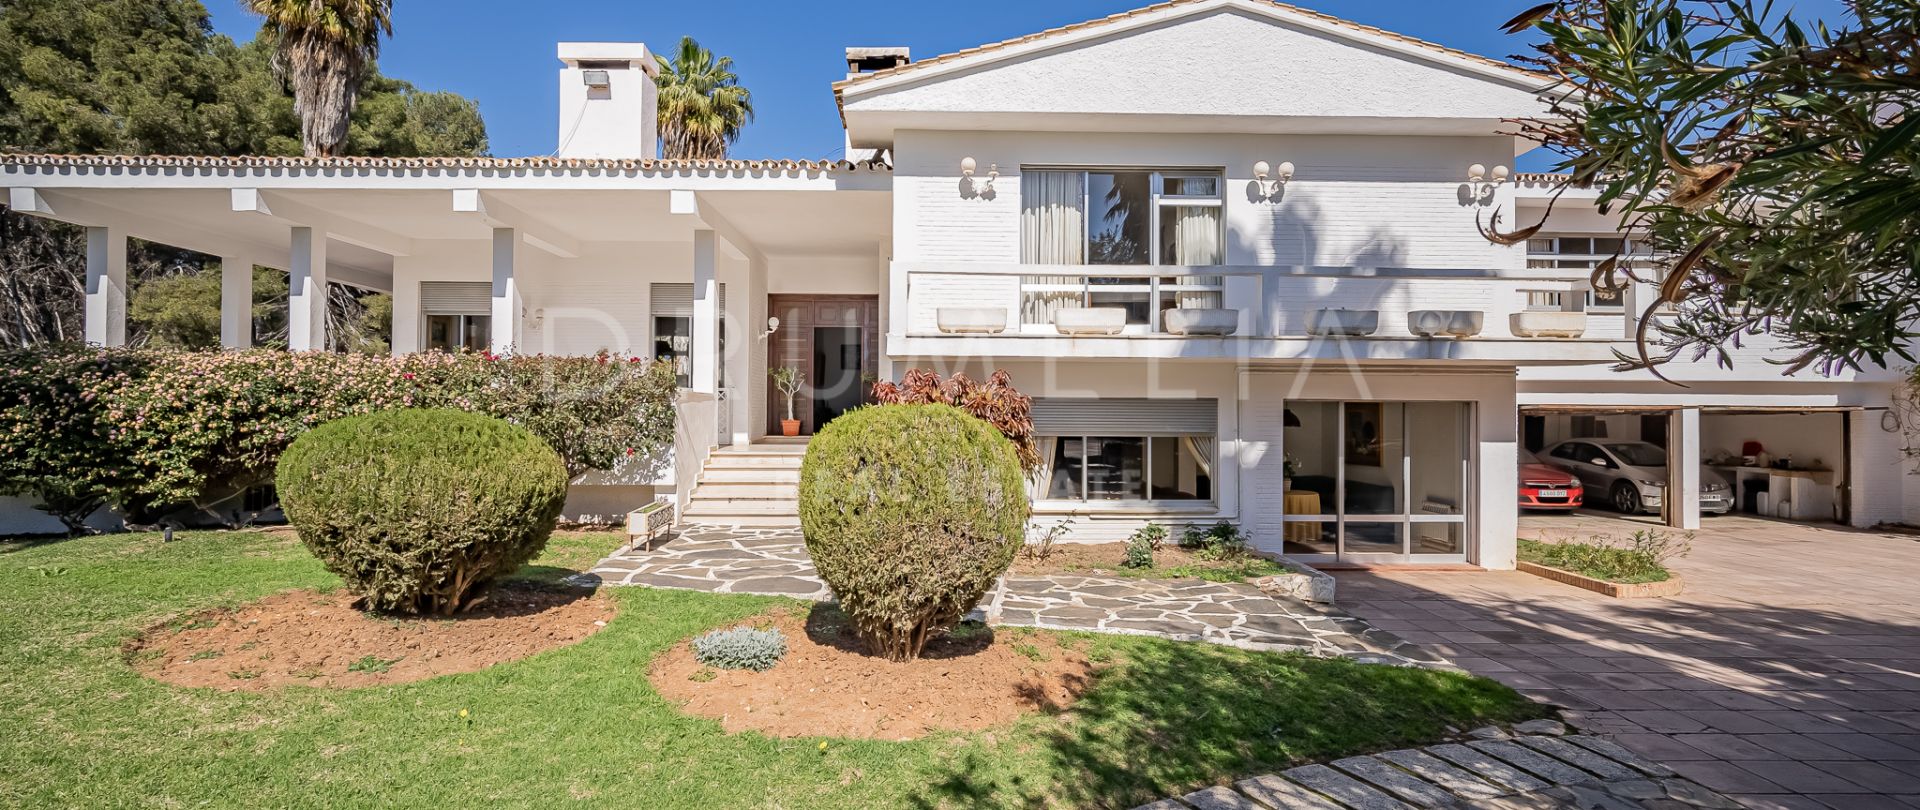 Magnífica casa mediterránea de lujo con espectaculares vistas al mar, El Mirador, Marbella